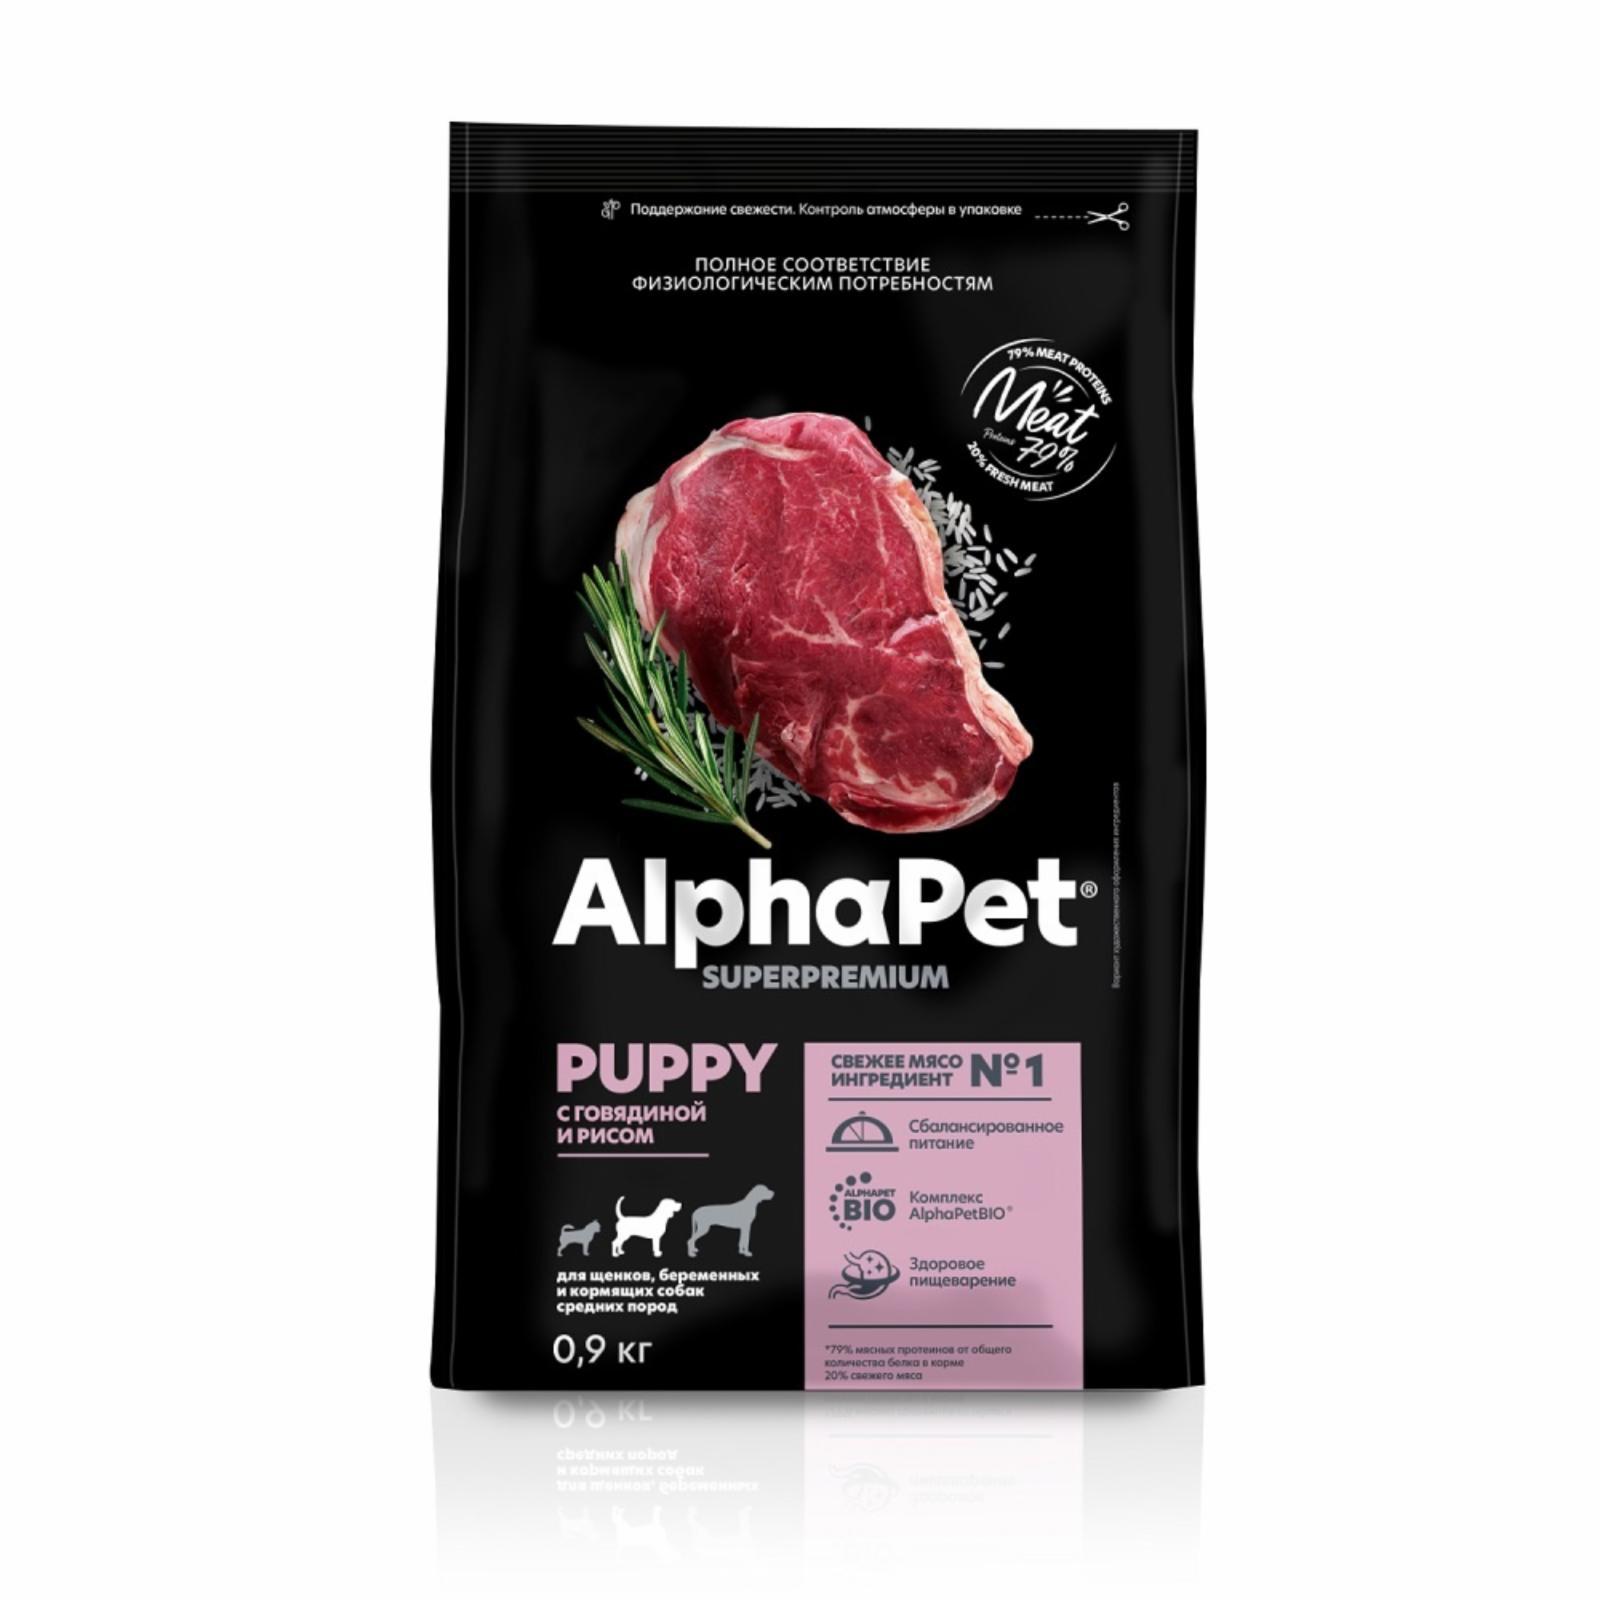 AlphaPet | Сухой полнорационный корм с говядиной и рисом для щенков, беременных и кормящих собак средних пород. 7 кг